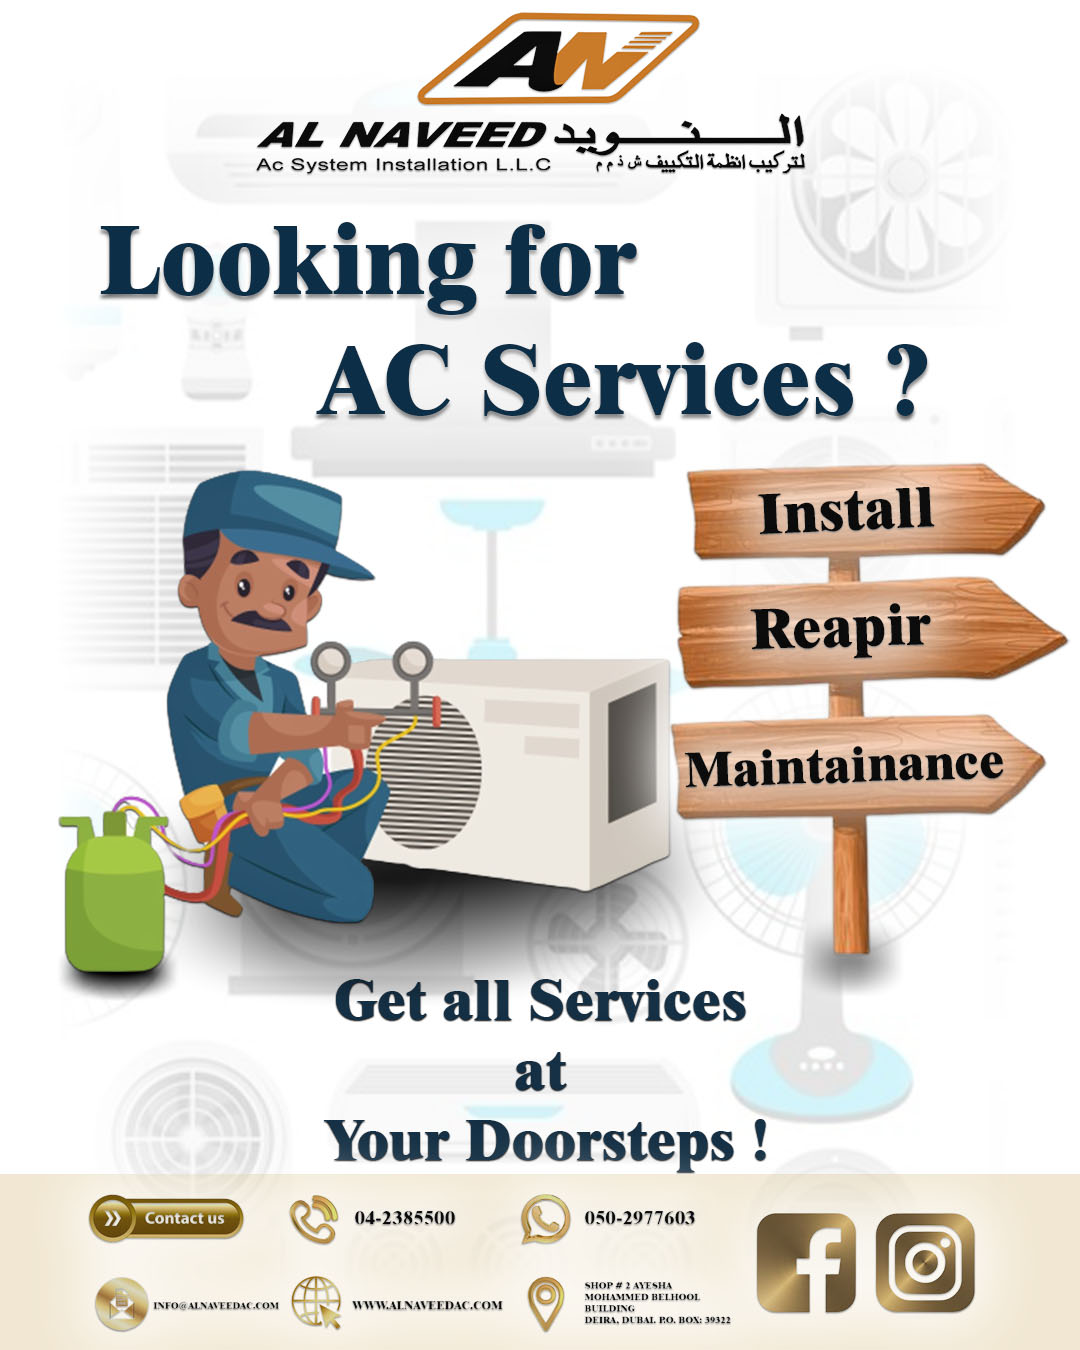 HVAC Installation, Maintainance and Repair